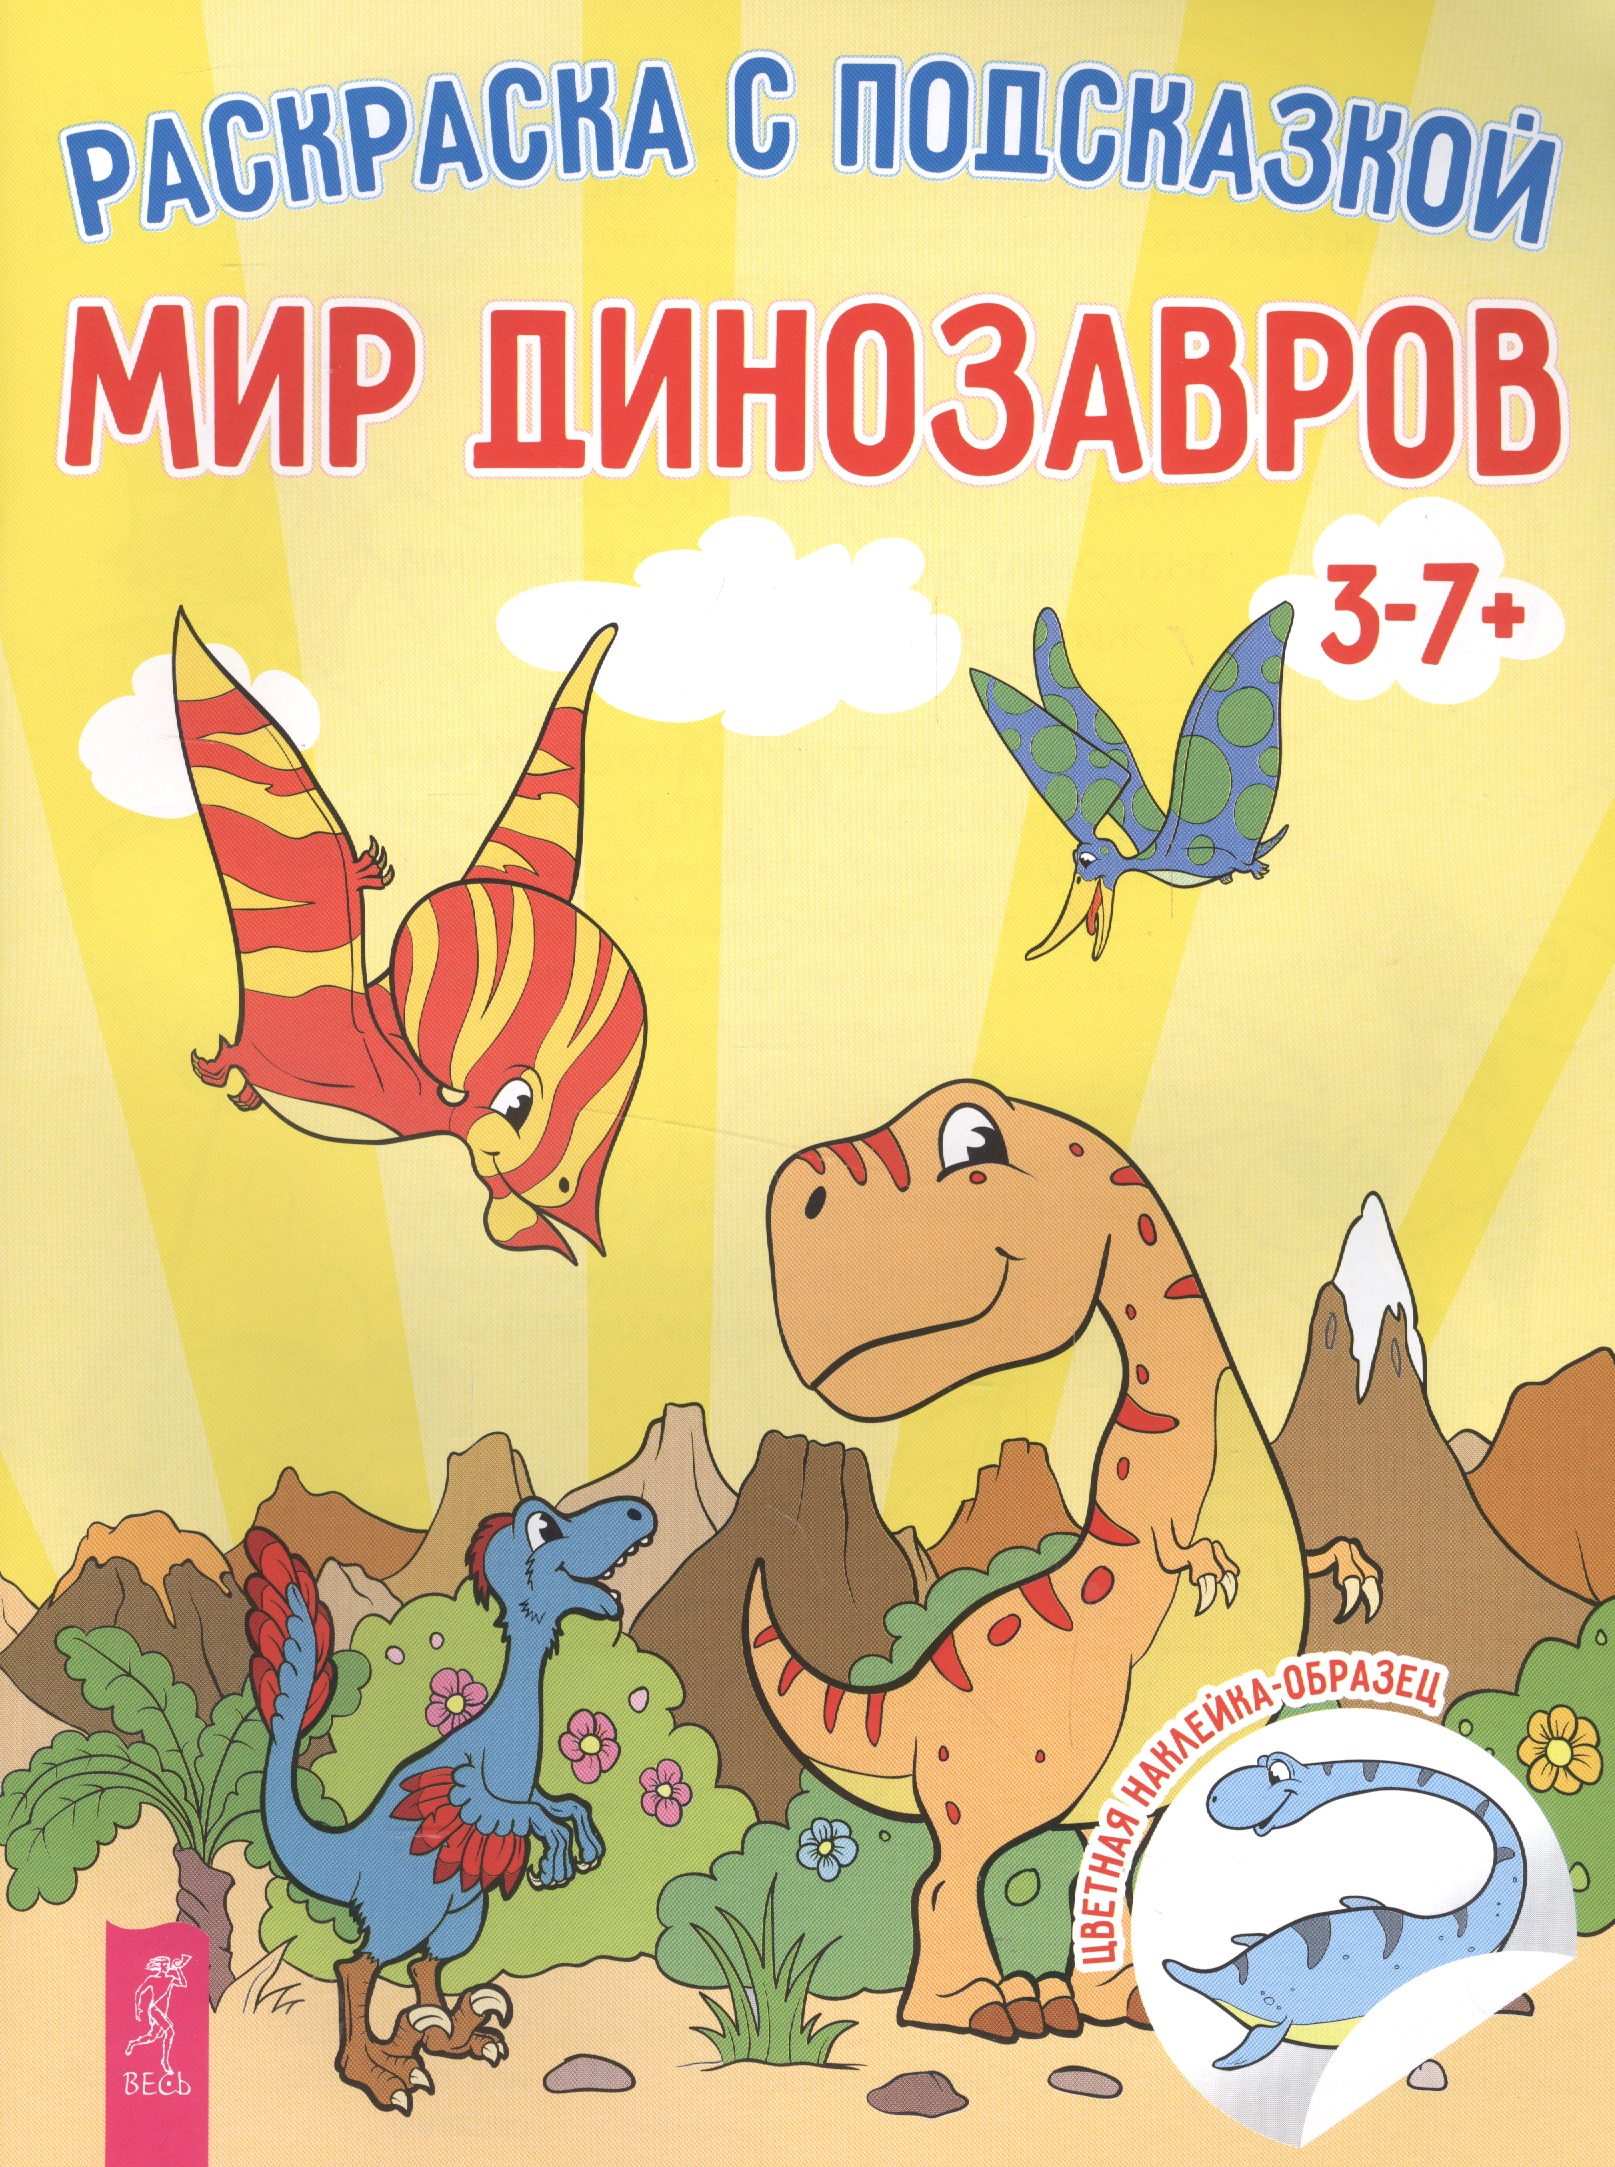 Мир динозавров мир динозавров 1